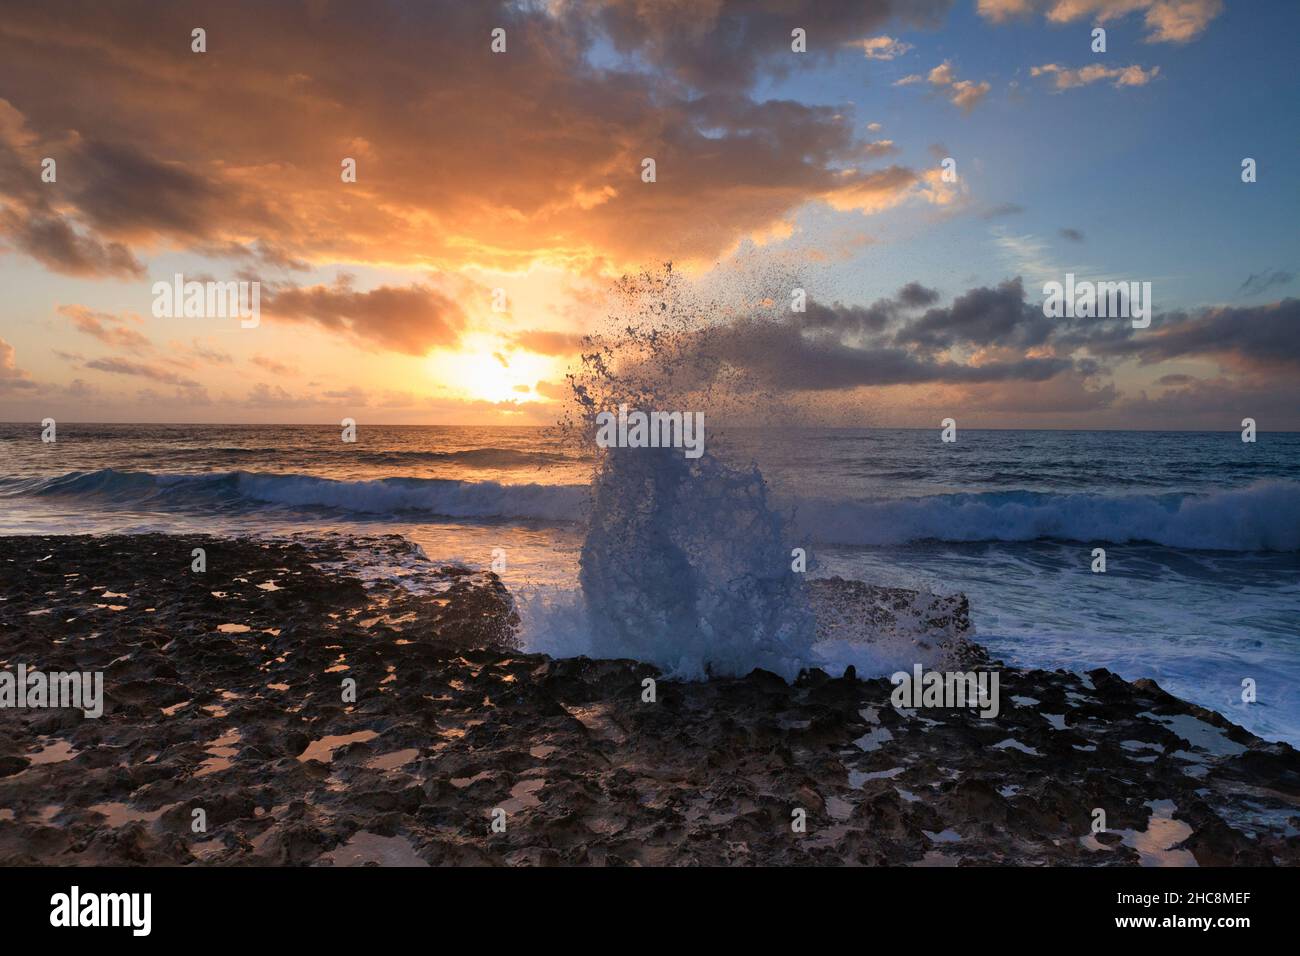 Sonnenuntergang und Wellen, die im Winter auf die felsige Küste stürmen, Halbinsel Akamas, Insel Zypern, östliches Mittelmeer Stockfoto